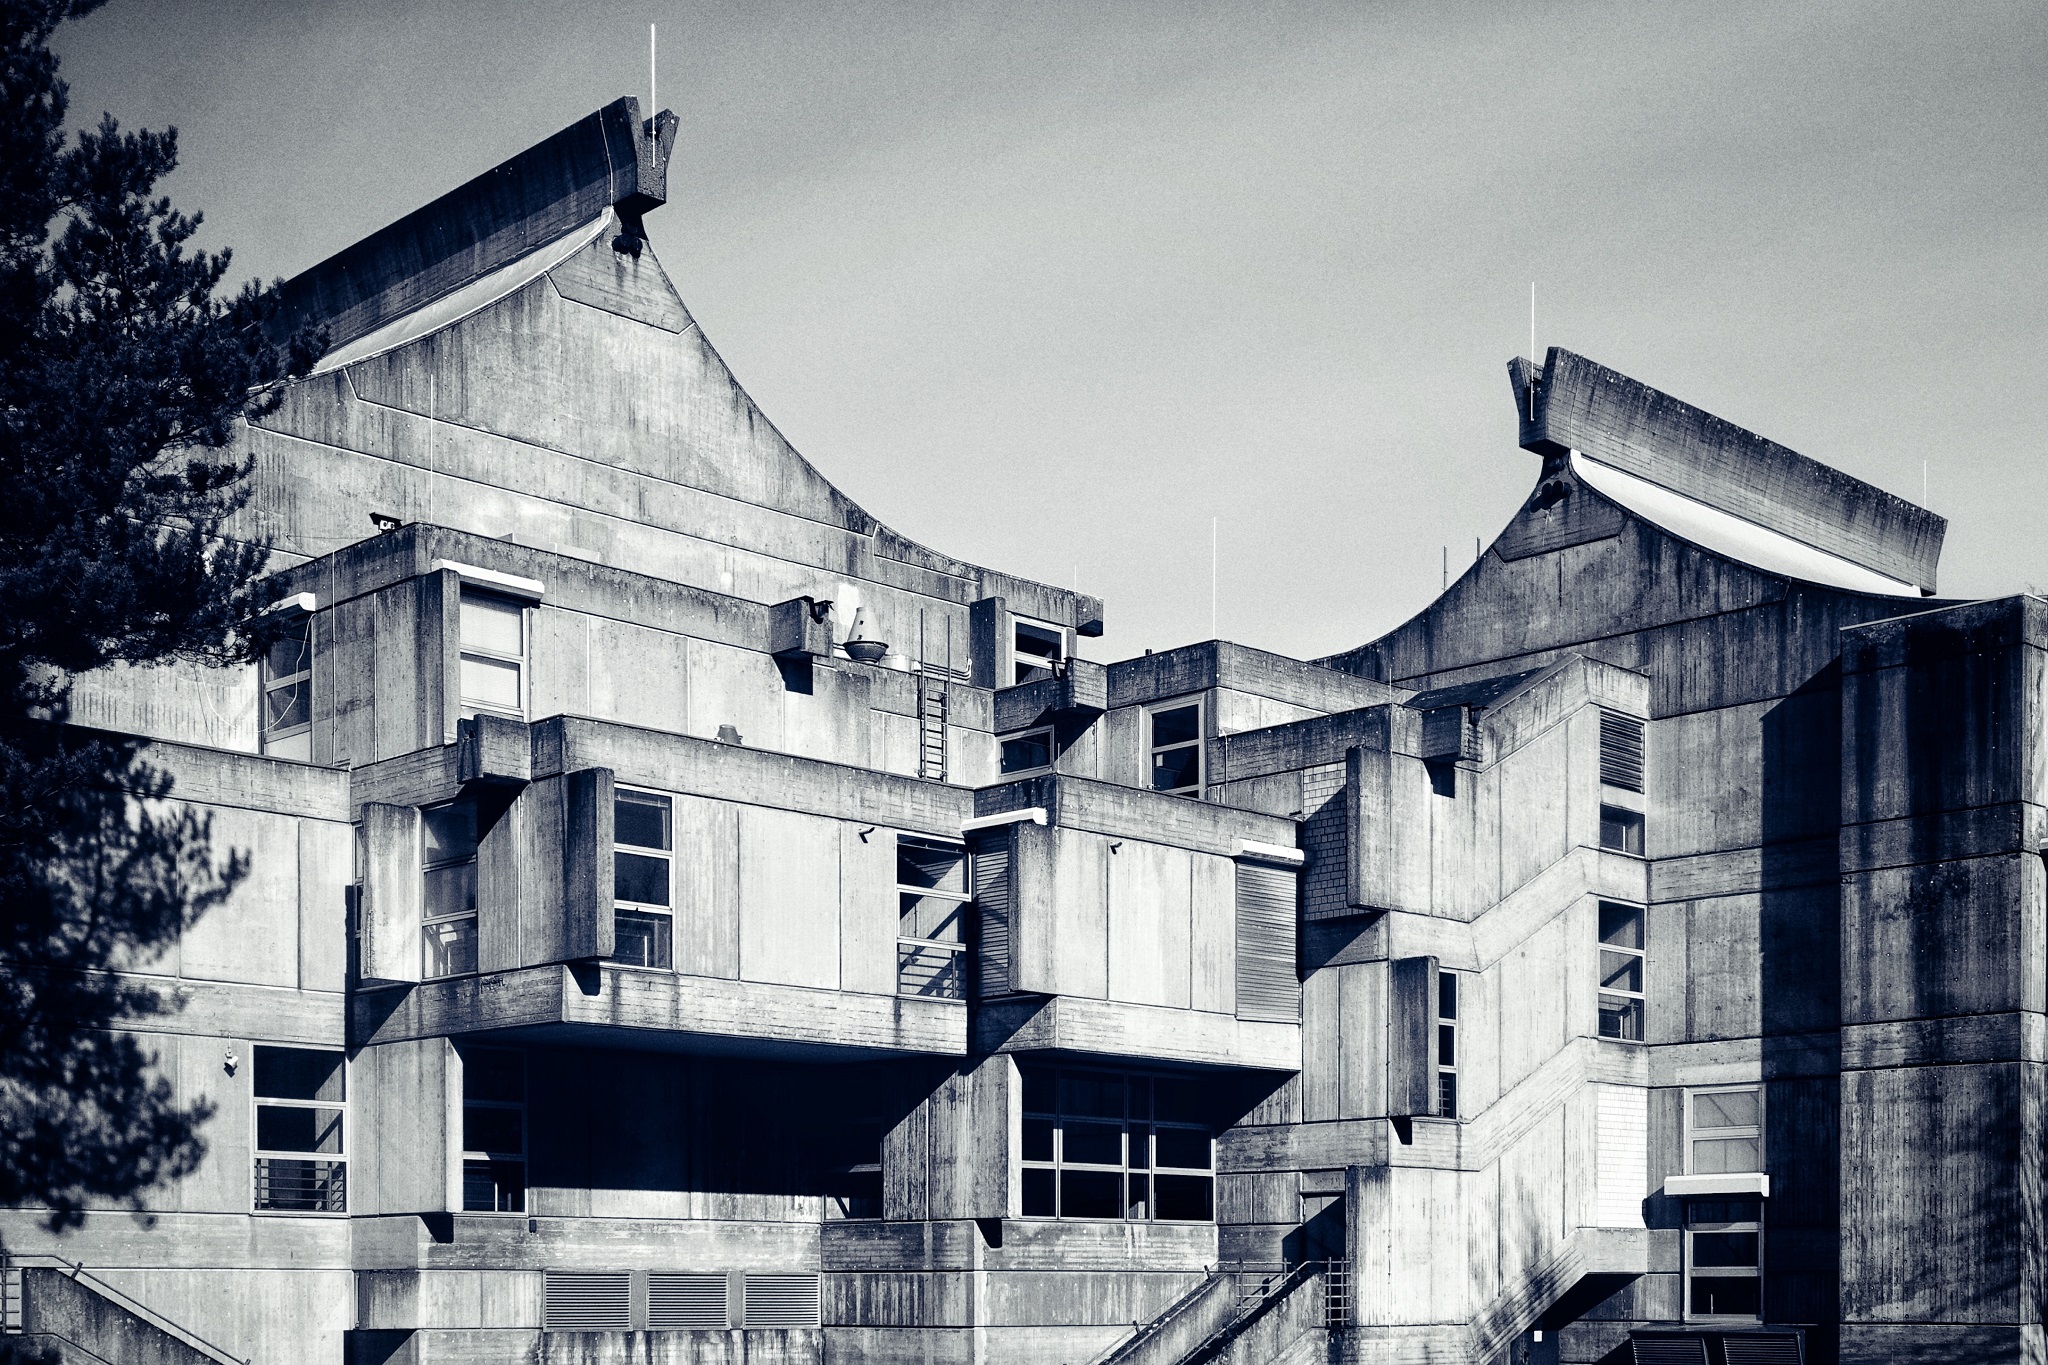 Auf Beton: Experimentelle Fotoausstellung zu Marburger Brutalismus-Architektur